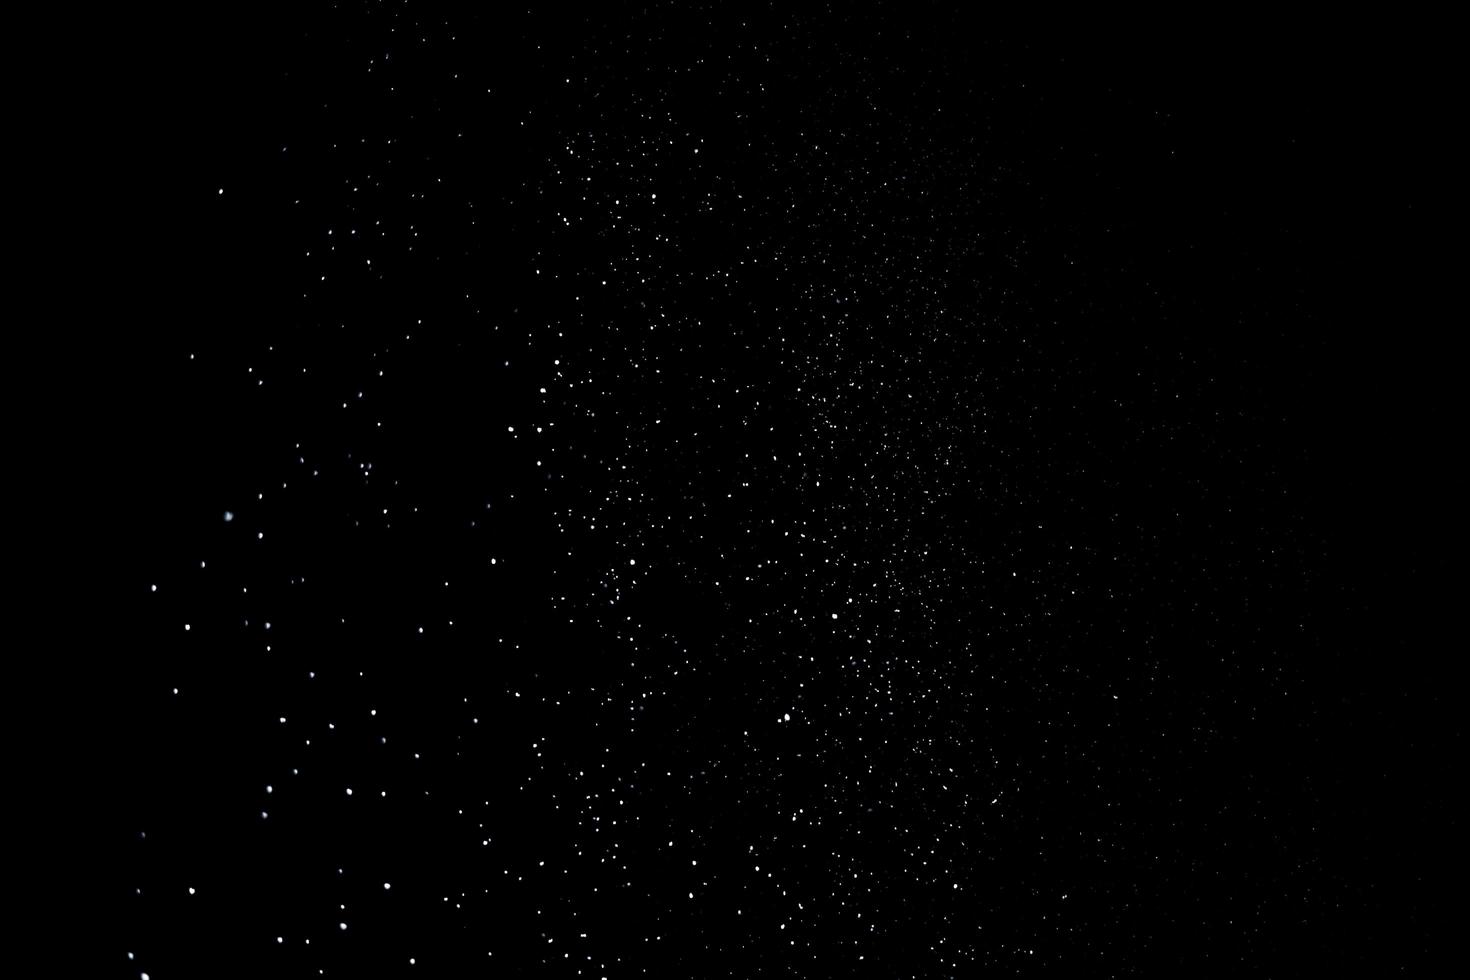 de vita partiklarna på svart bakgrund som representerar ett snöfall. snö överläggsfilmer för att ge en frys- eller vintereffekt till videopresentationen. foto